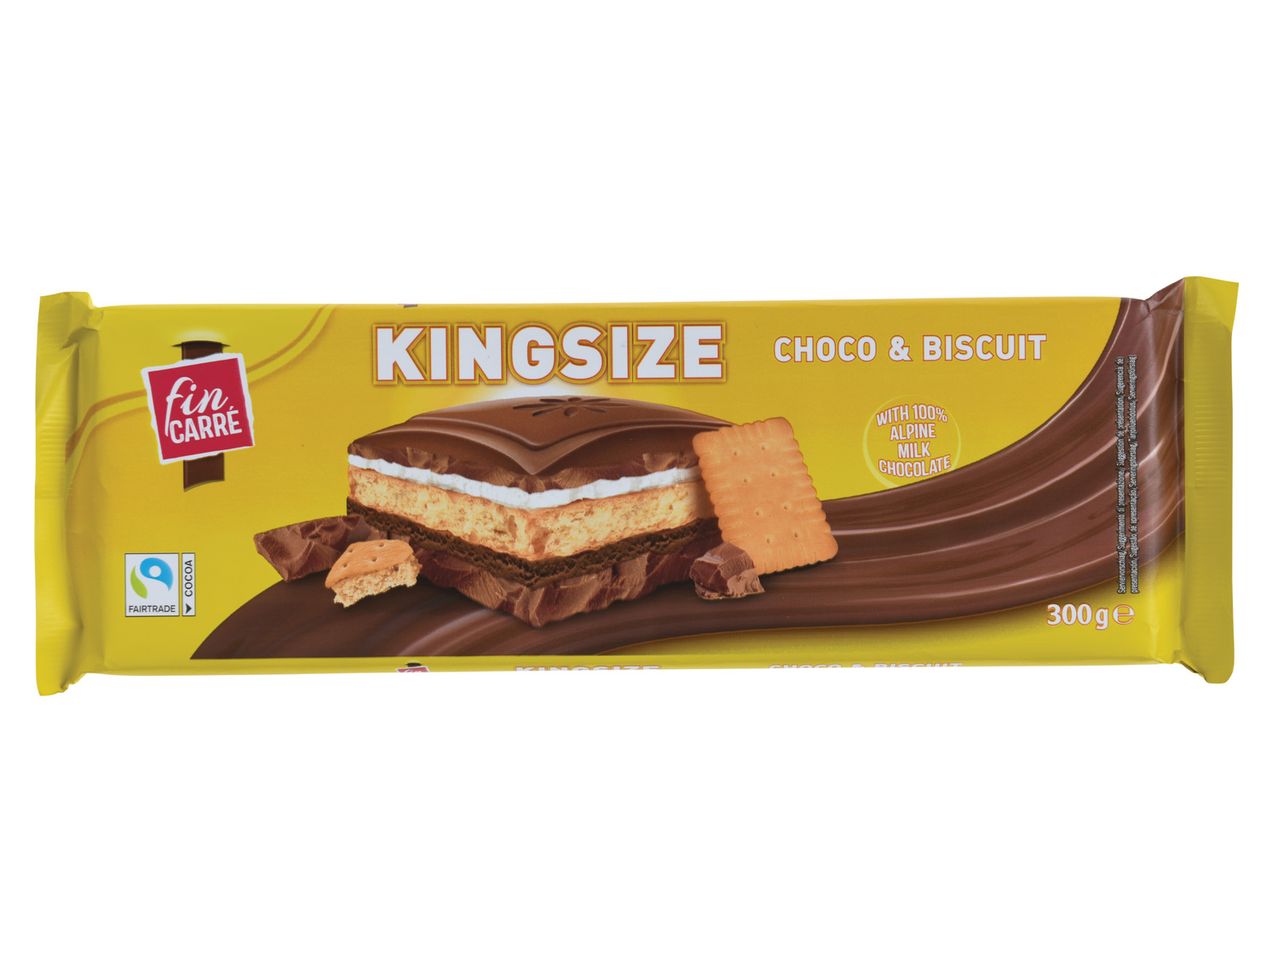 Ver empliada: Fin Carré® Chocolate Recheado King Size - Imagem 2